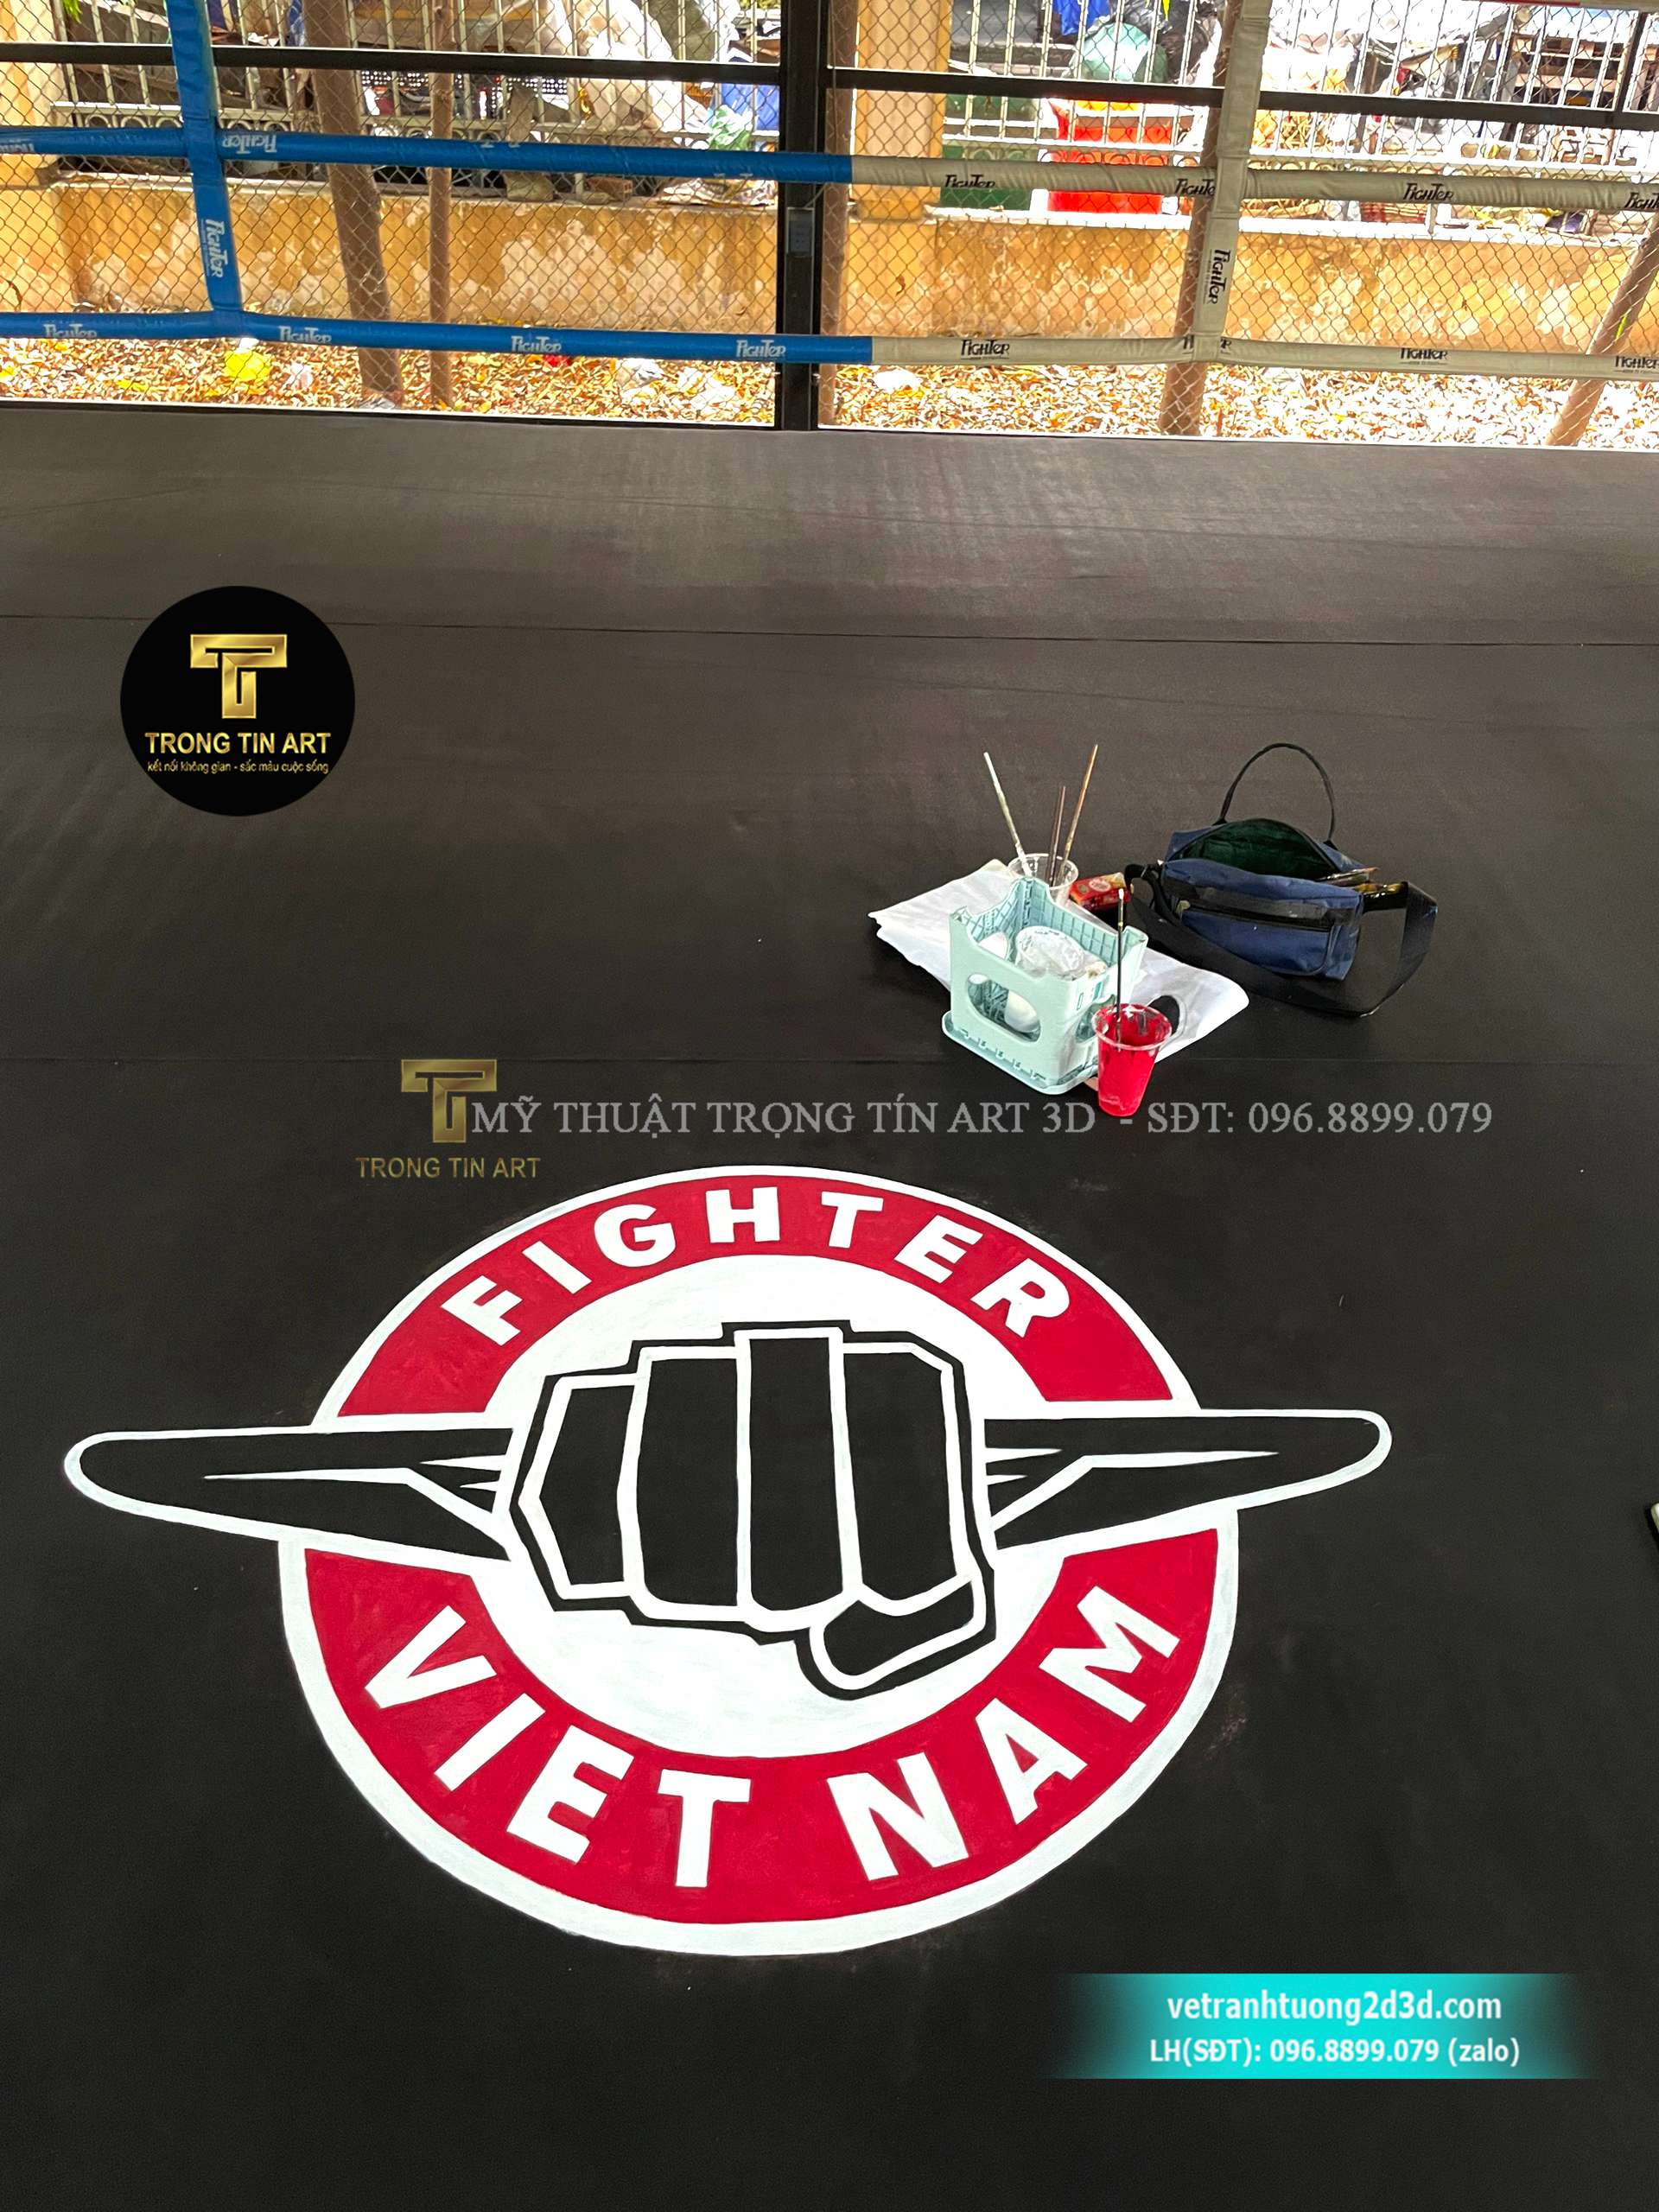 vẽ logo sàn đấu boxing,vẽ sàn đấu boxing,vẽ logo sàn đấu,vẽ logo fighter vietnam,vẽ logo sàn đấu võ đài,vẽ logo boxing,vẽ tranh phòng gym